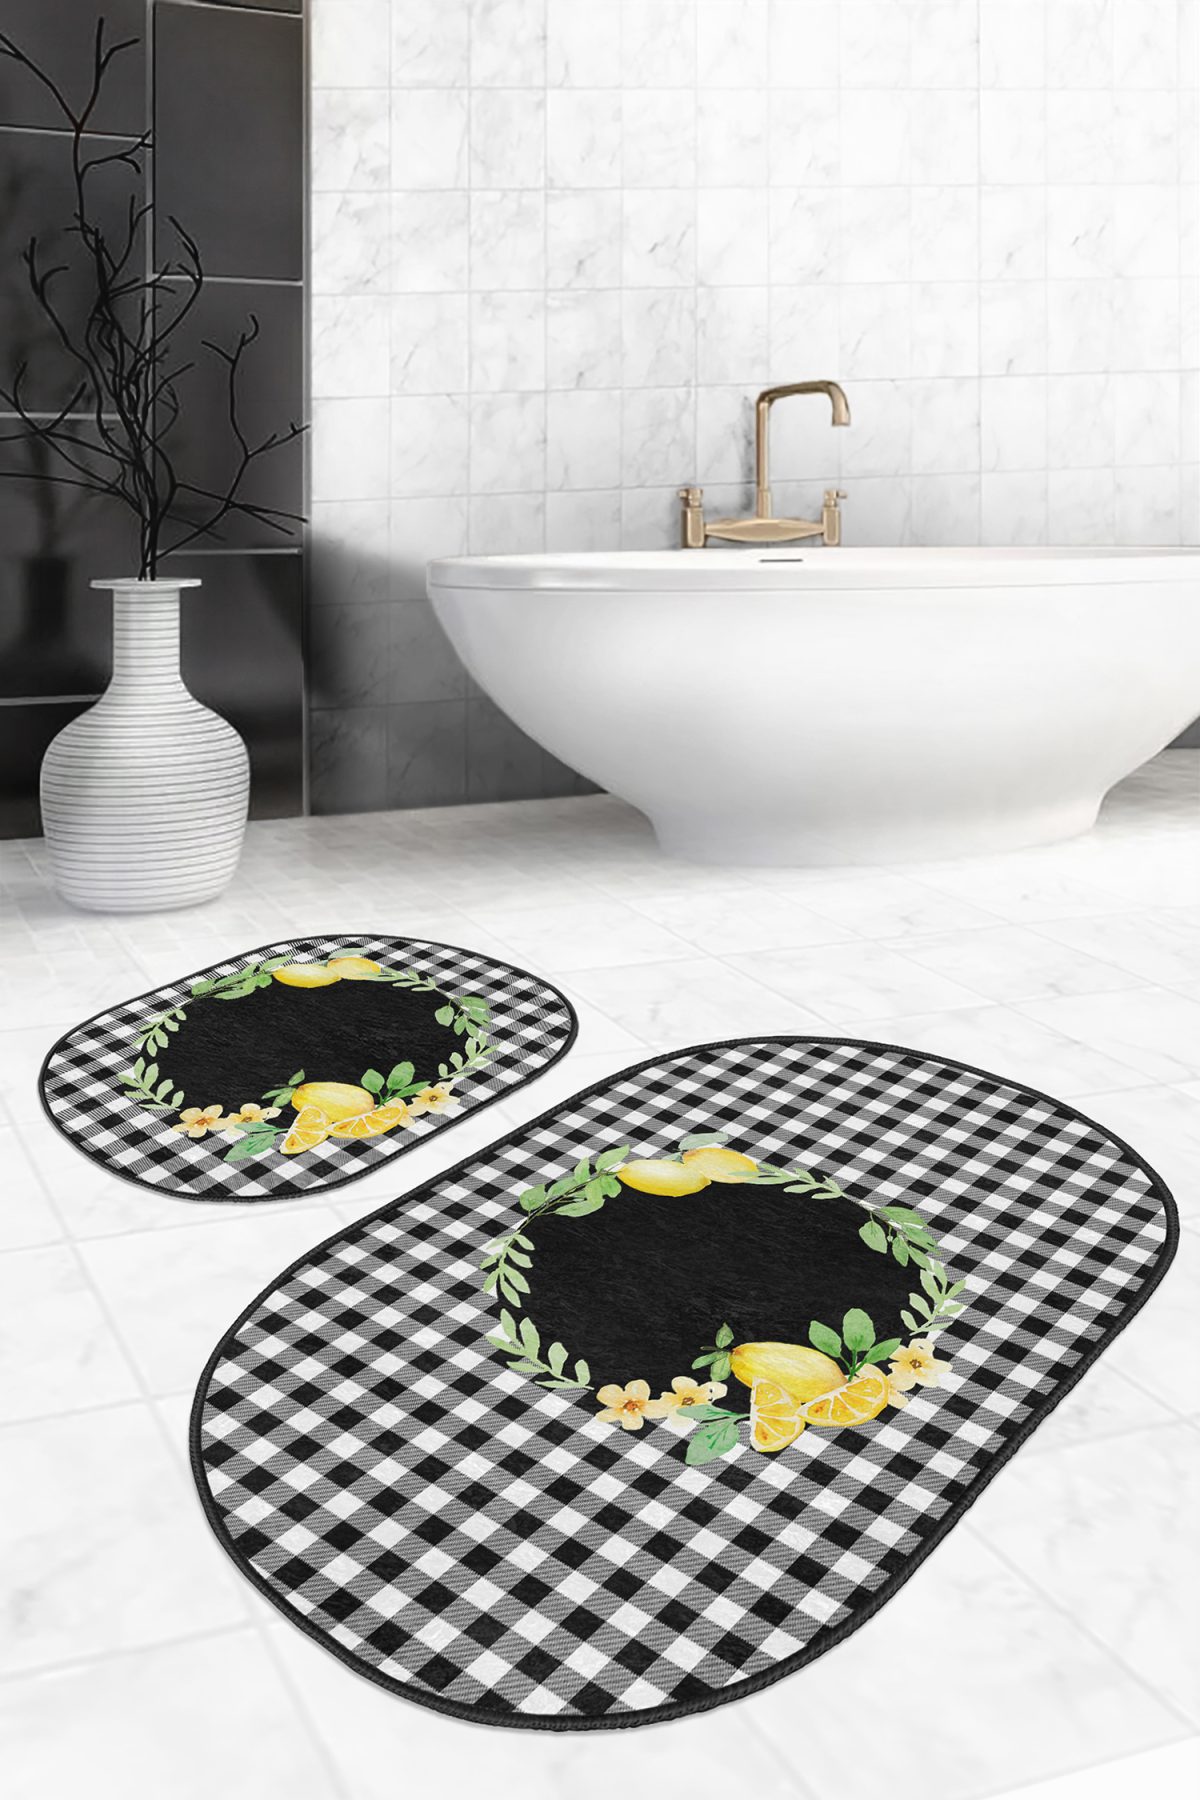 Siyah Ekose Motifli Limon Tasarımlı 2'li Oval Banyo Paspas Takımı & Klozet Paspas Seti Realhomes